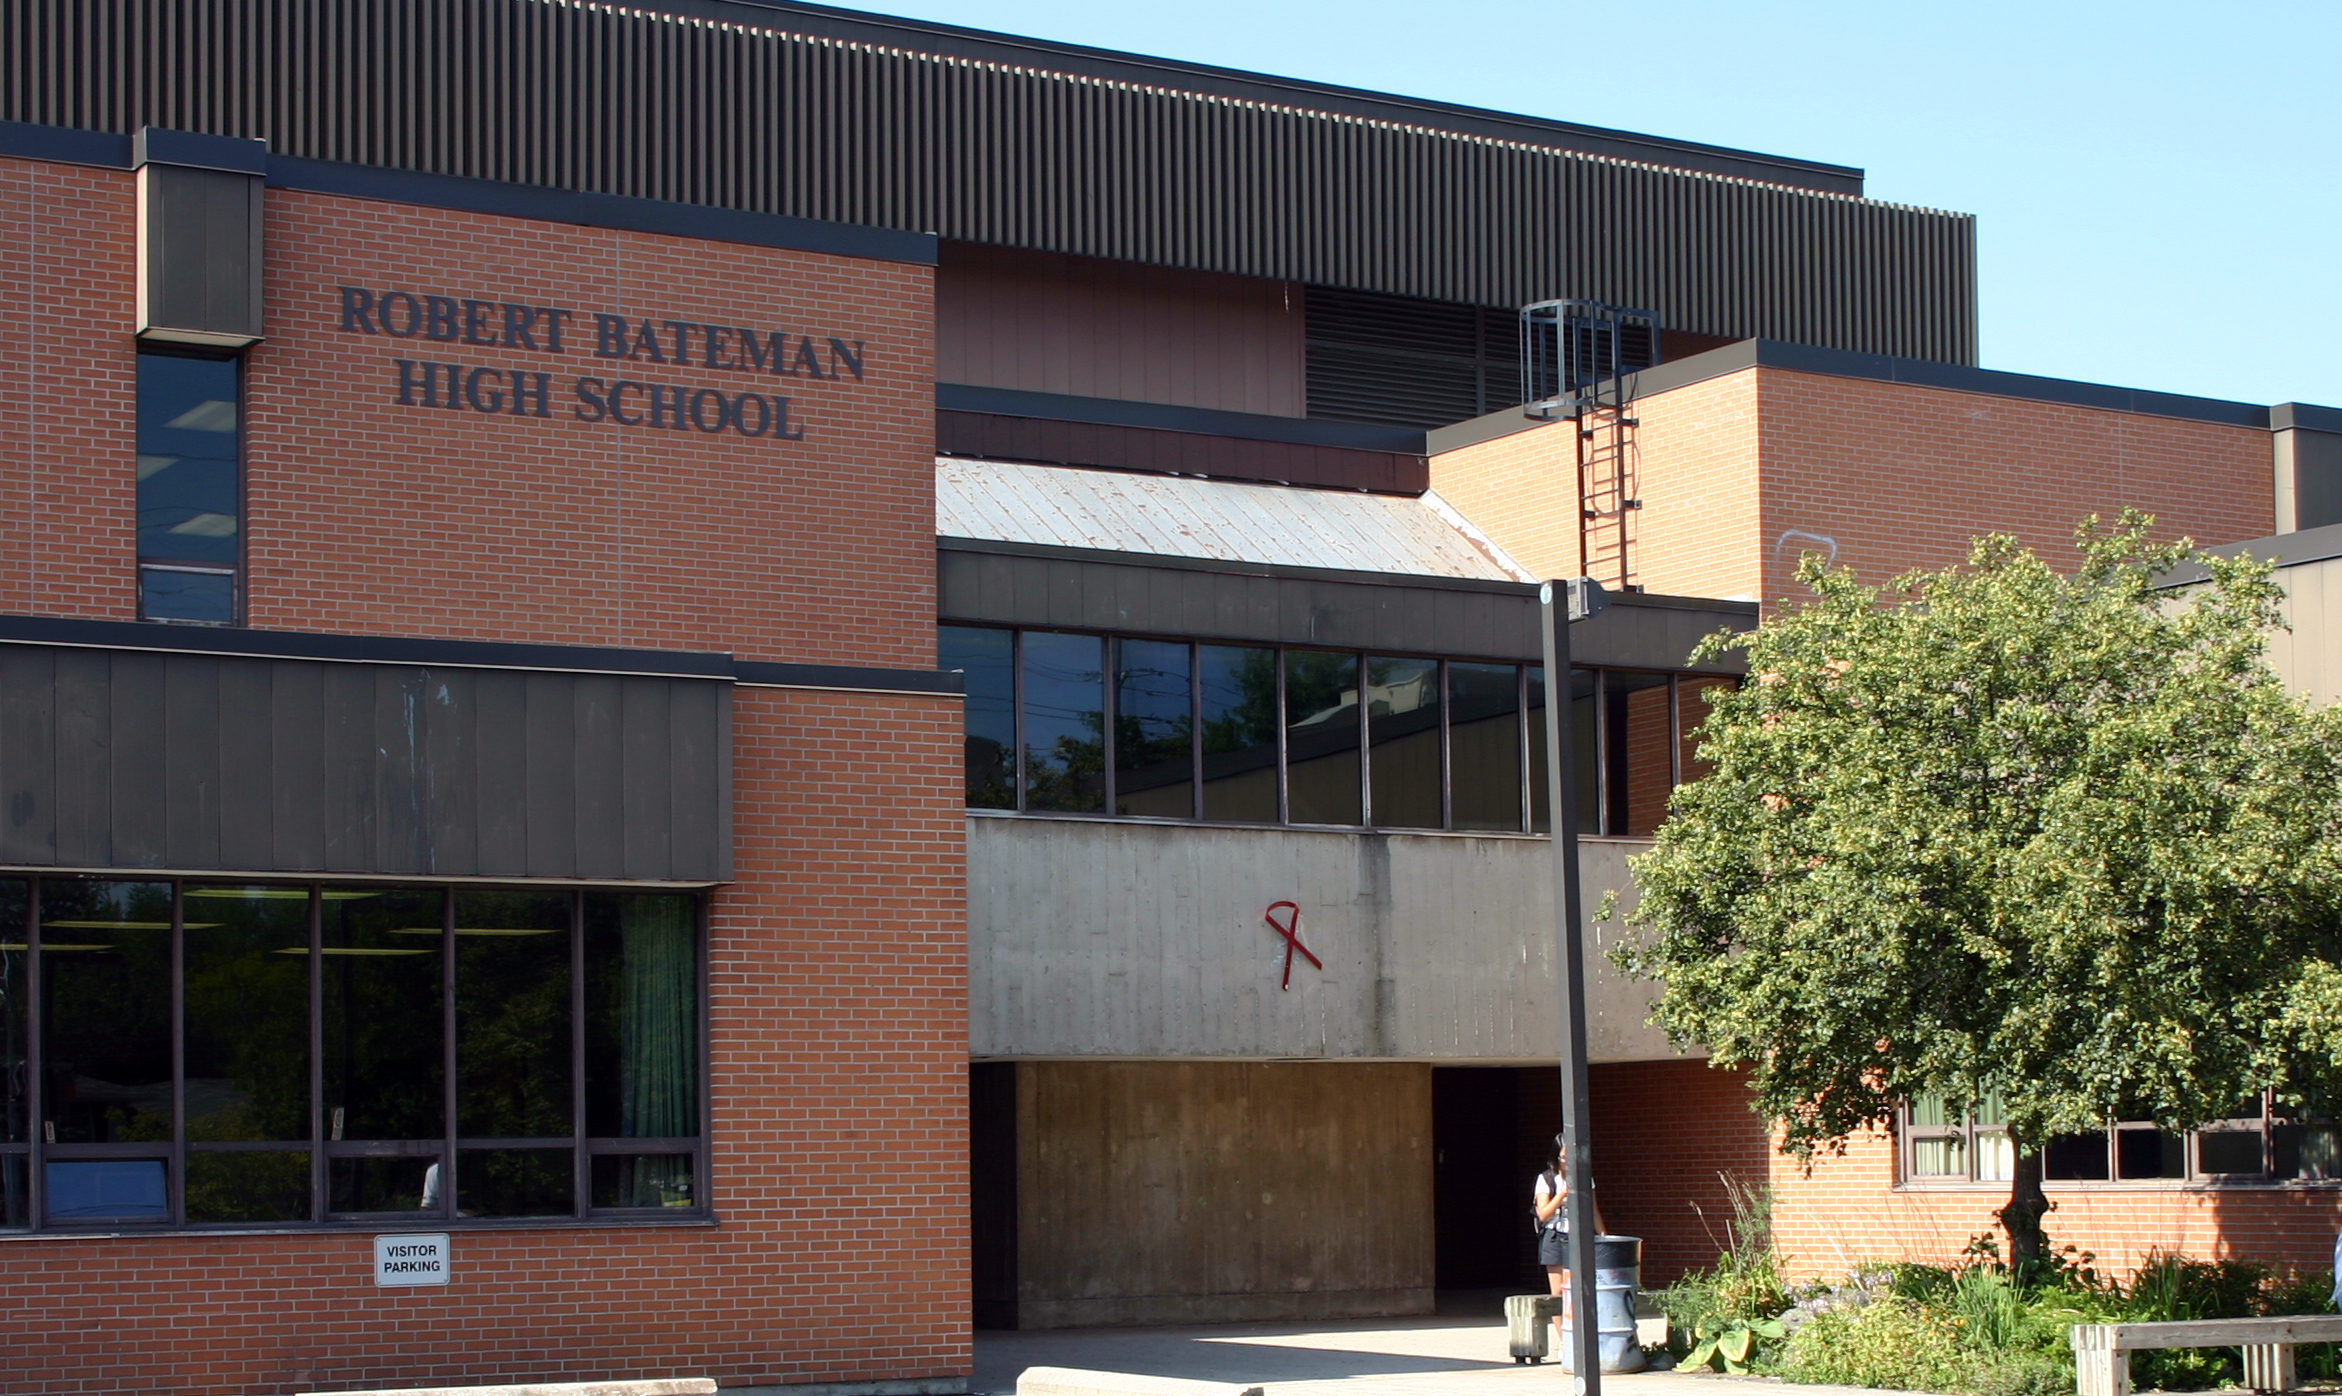 Image result for Robert Bateman High School